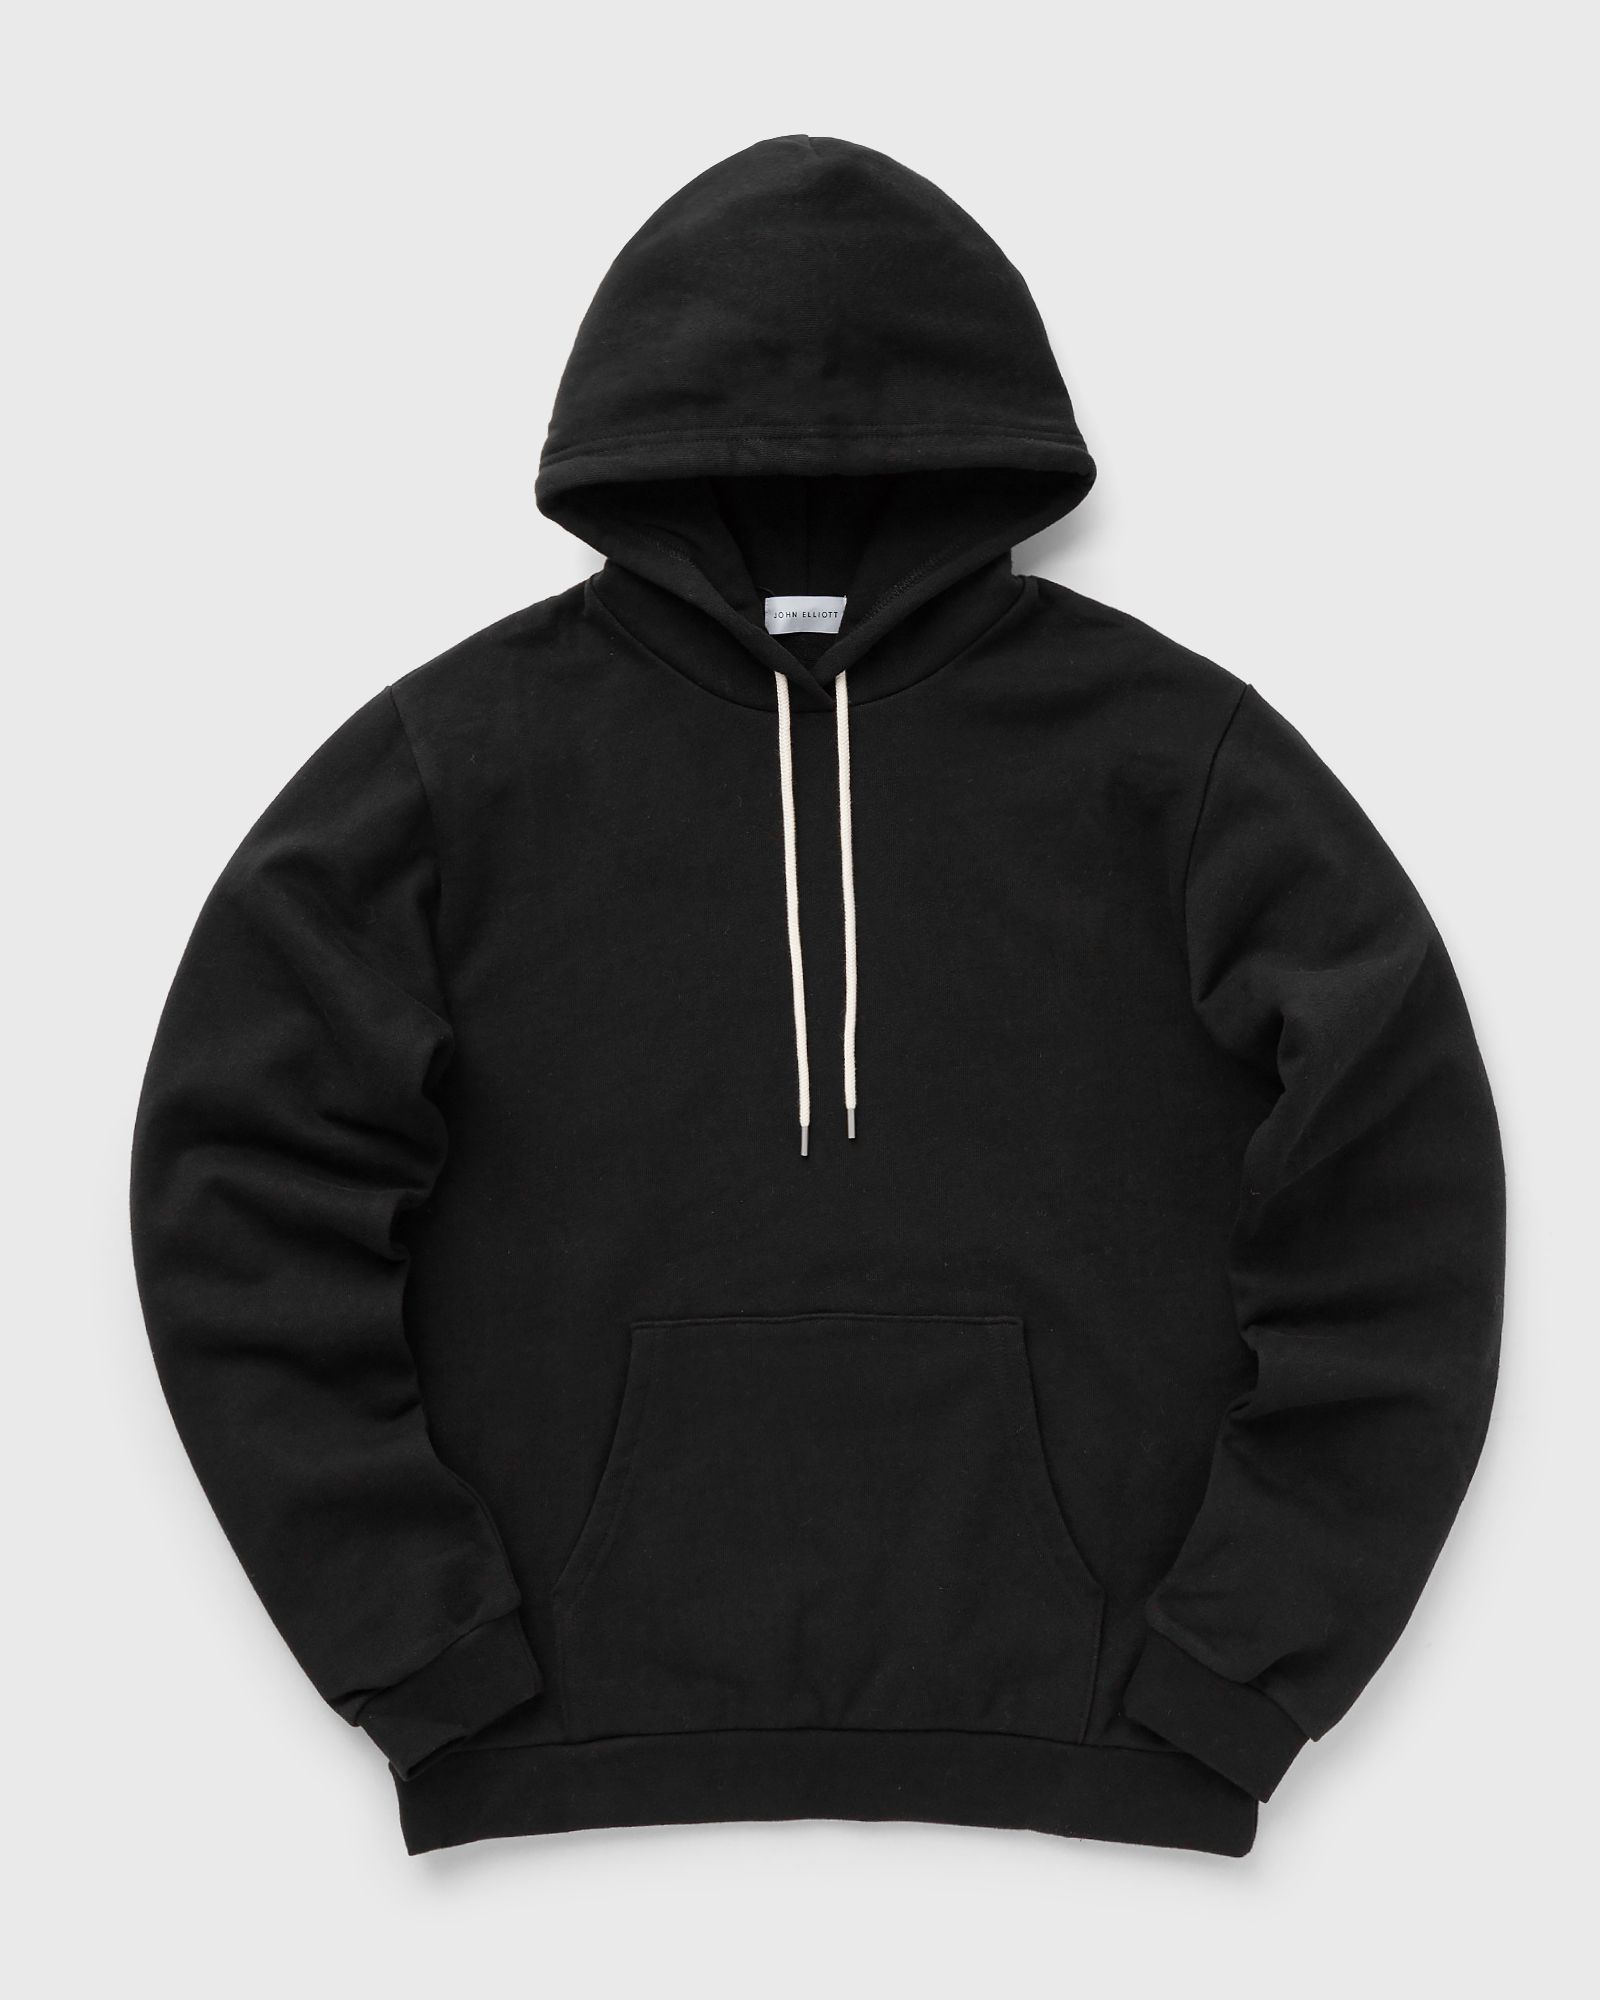 John Elliott - beach hoodie men hoodies black in größe:l